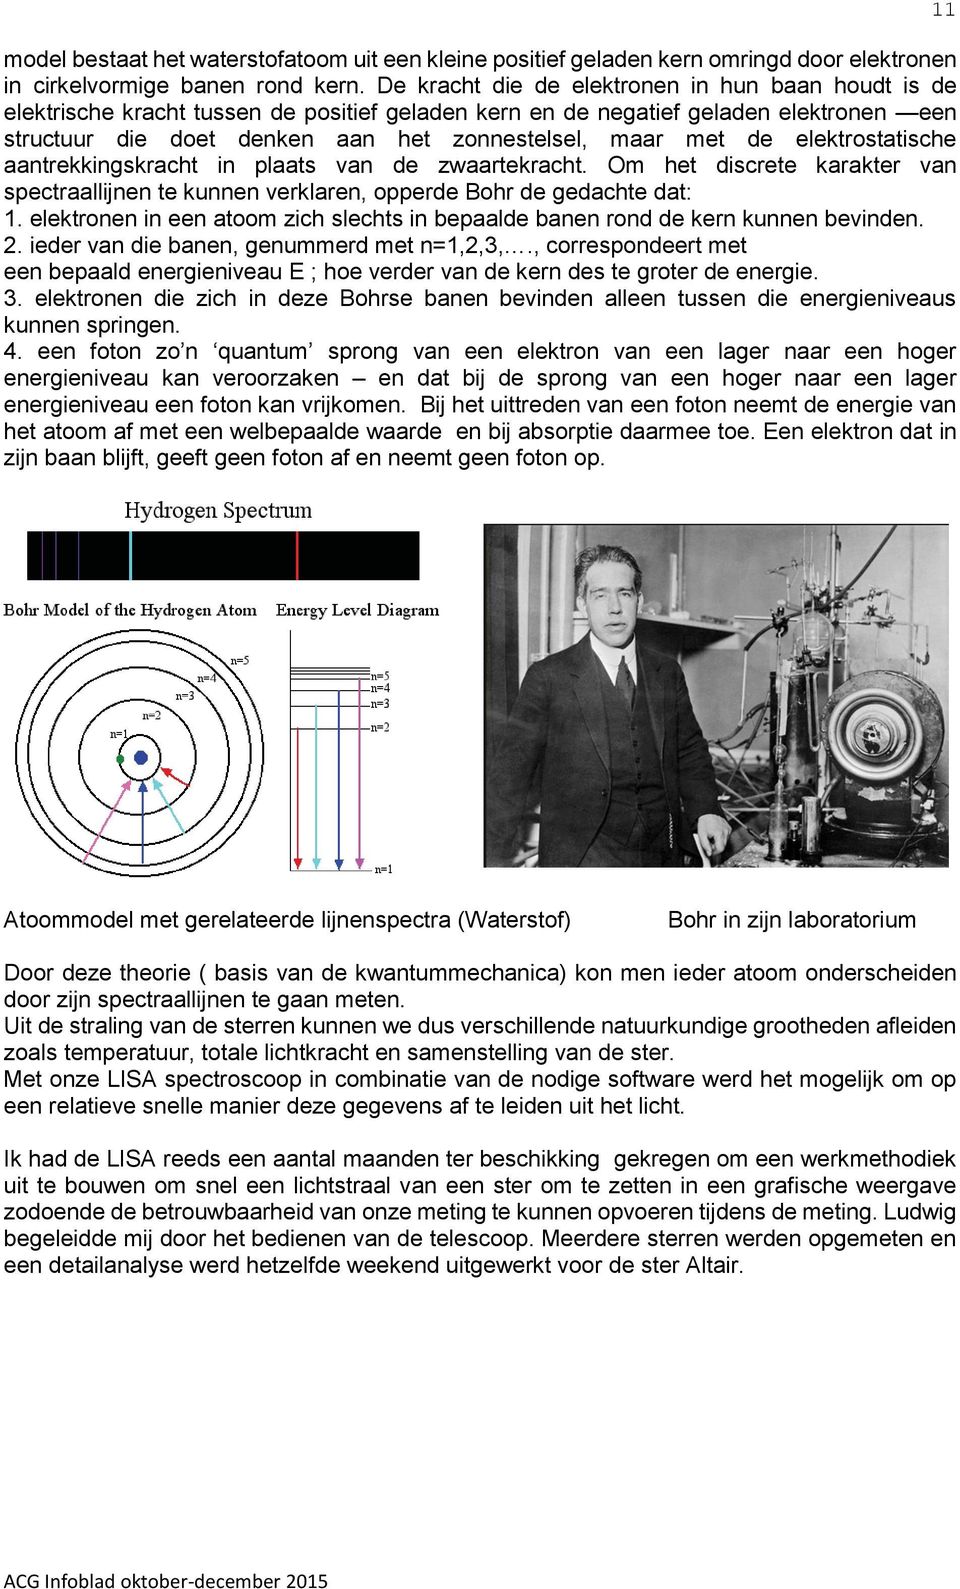 de elektrostatische aantrekkingskracht in plaats van de zwaartekracht. Om het discrete karakter van spectraallijnen te kunnen verklaren, opperde Bohr de gedachte dat: 1.